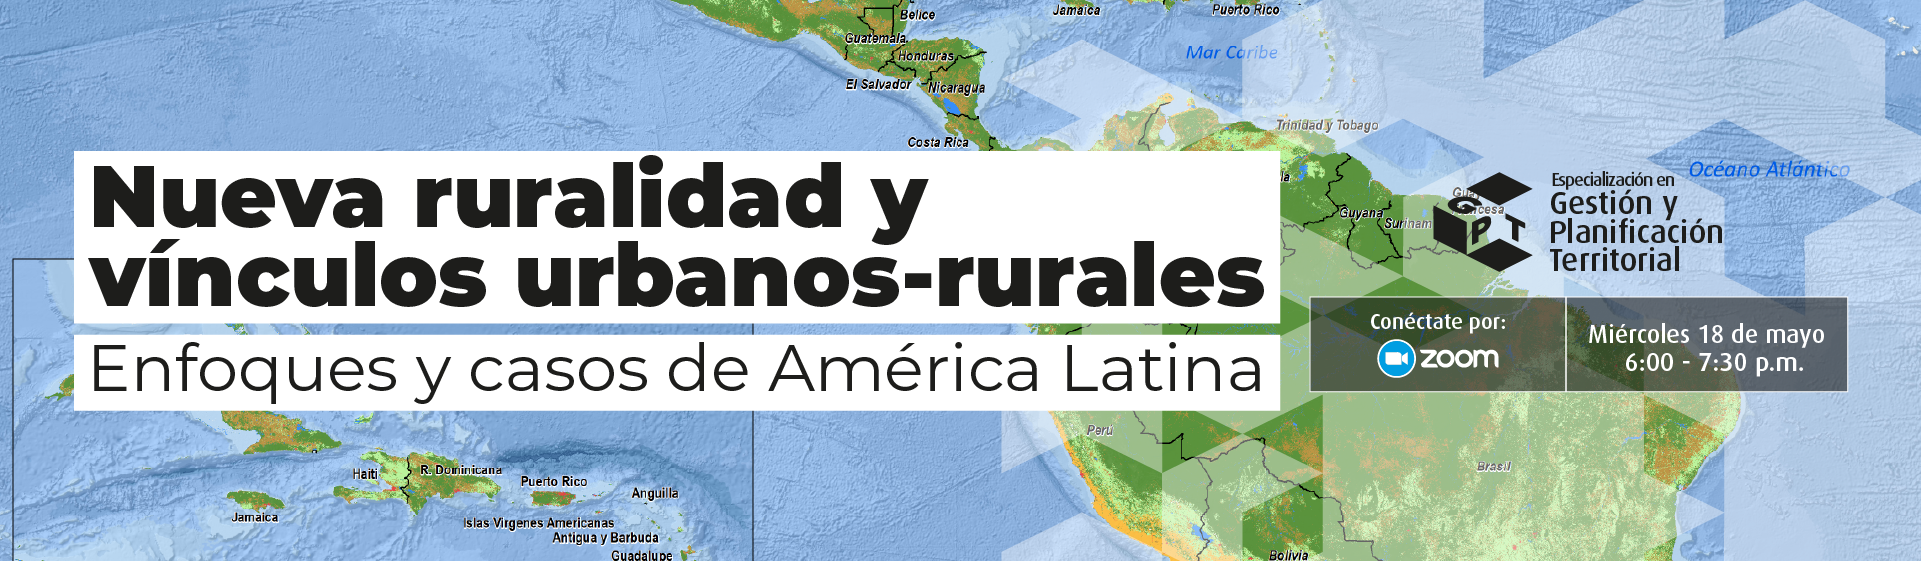 Nueva ruralidad y vínculos urbano-rurales - Enfoques y casos de América Latina